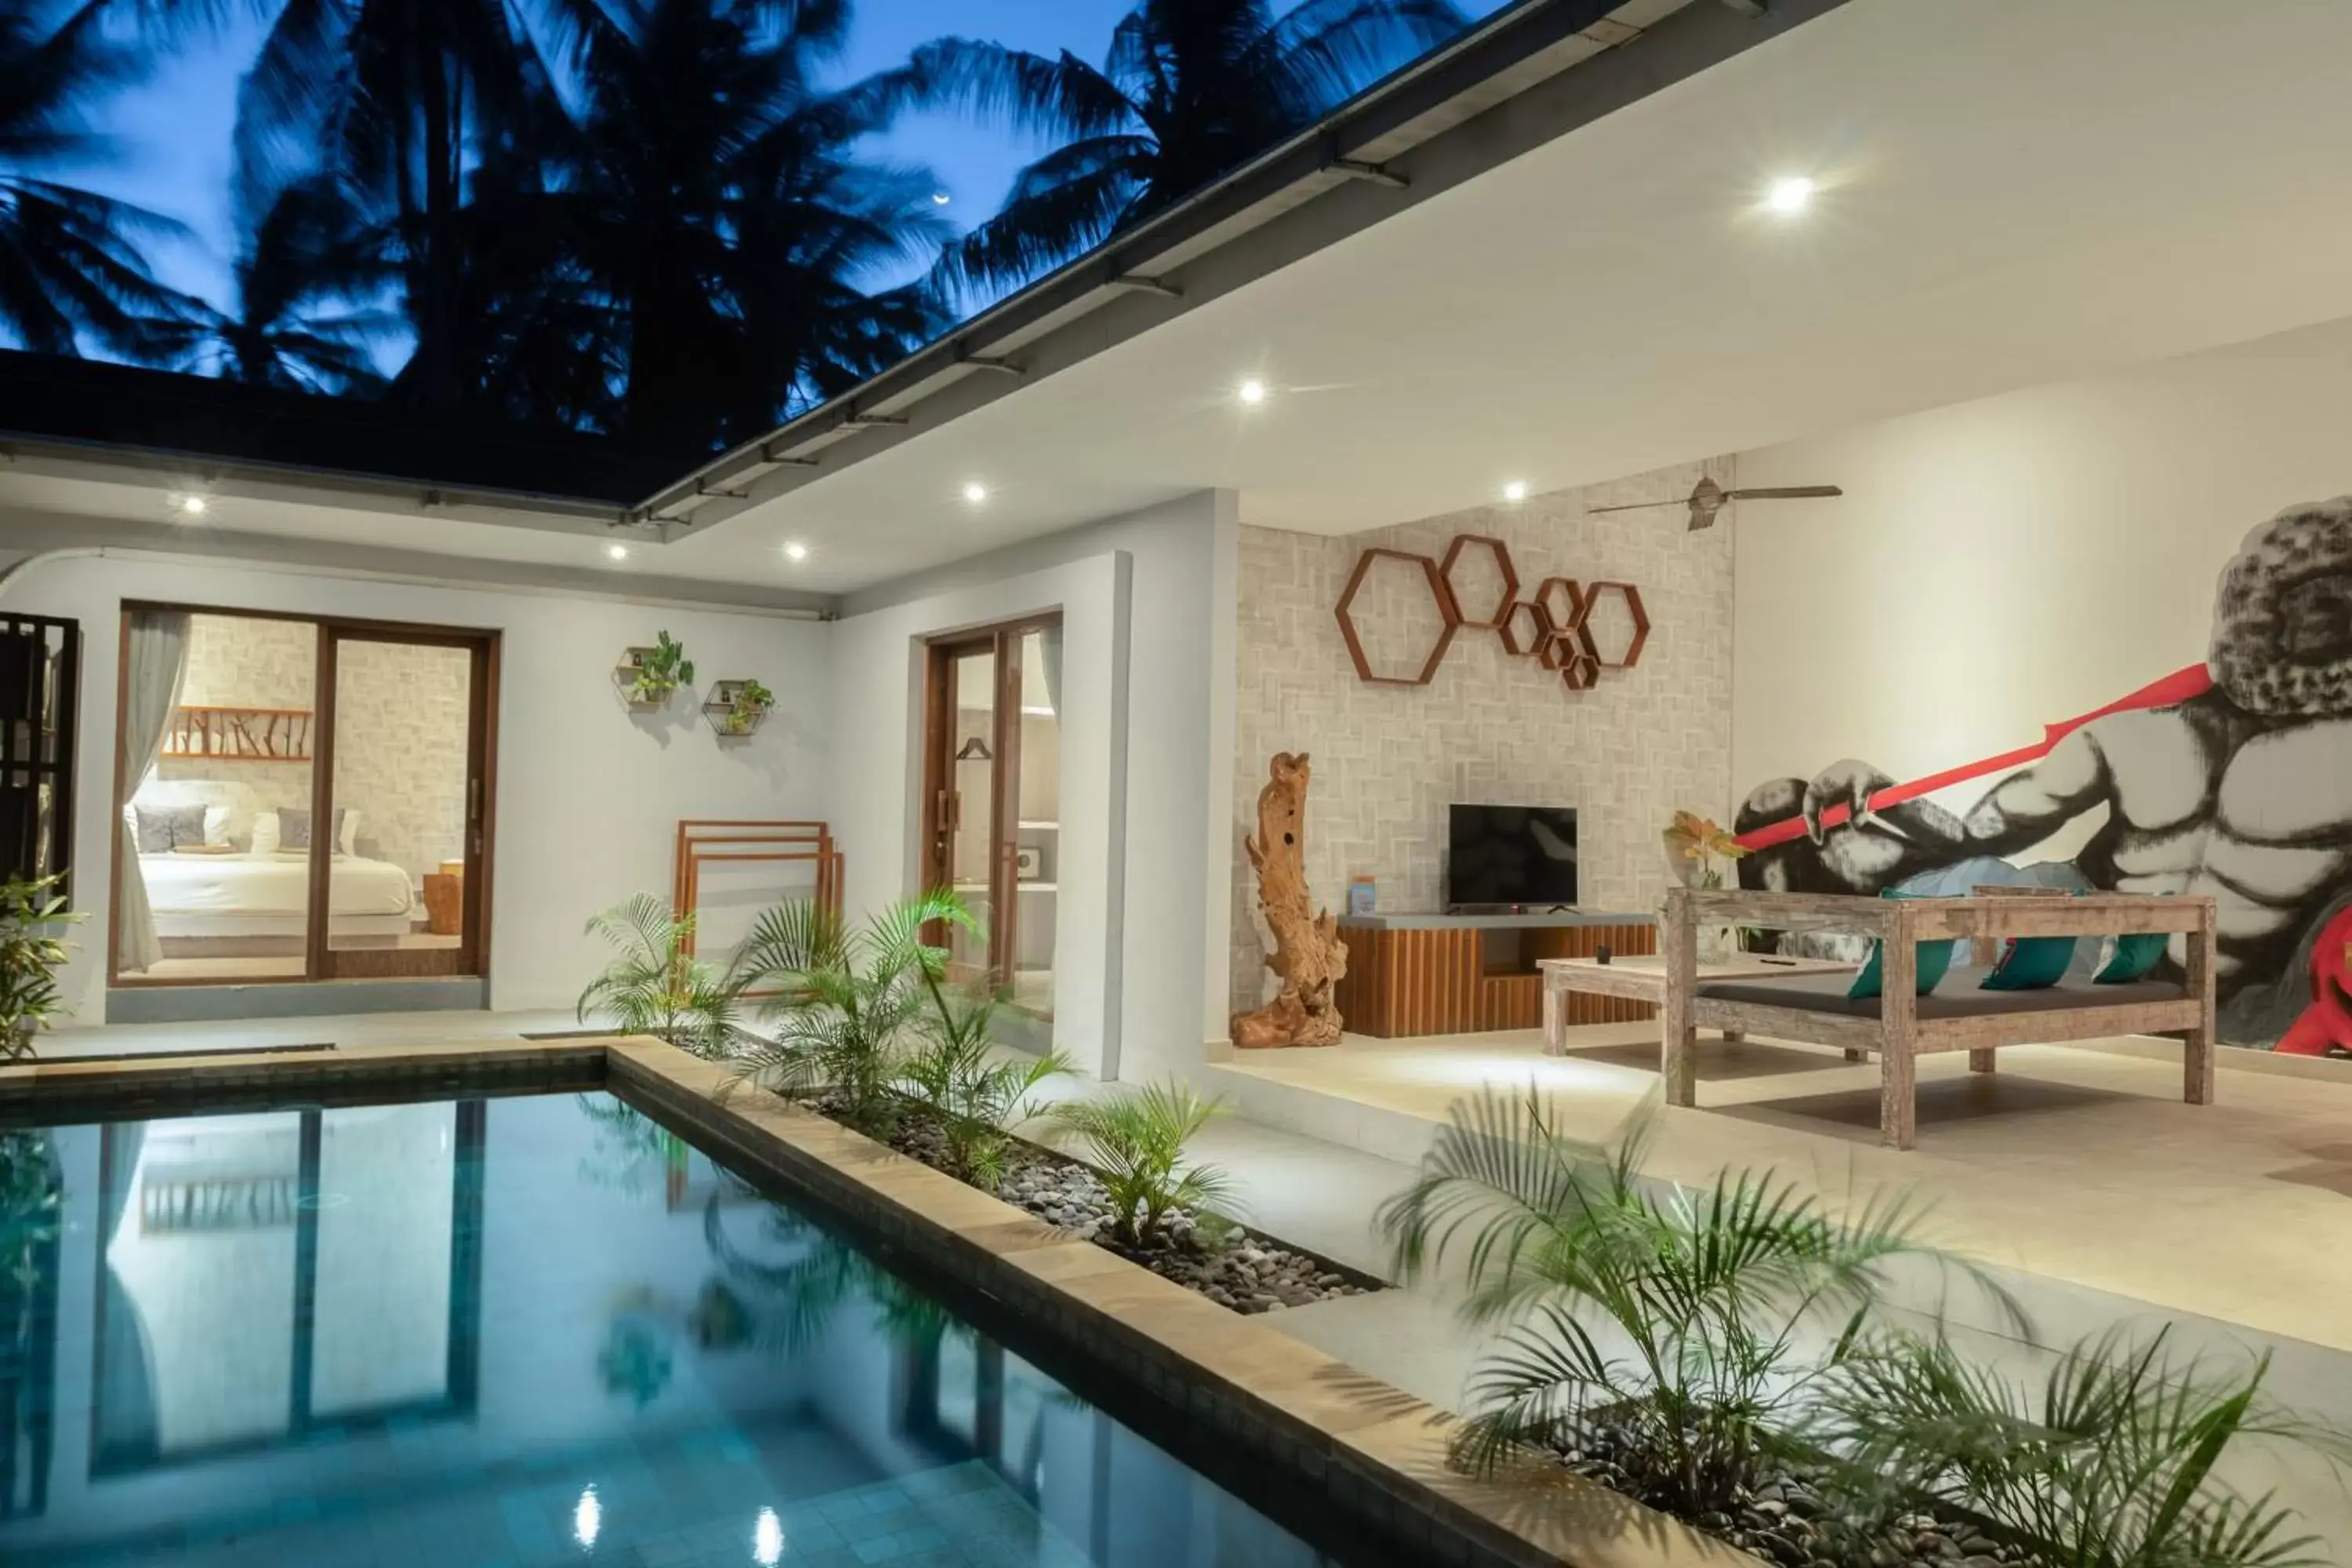 Property building, Swimming Pool in Gili Khayangan Villas